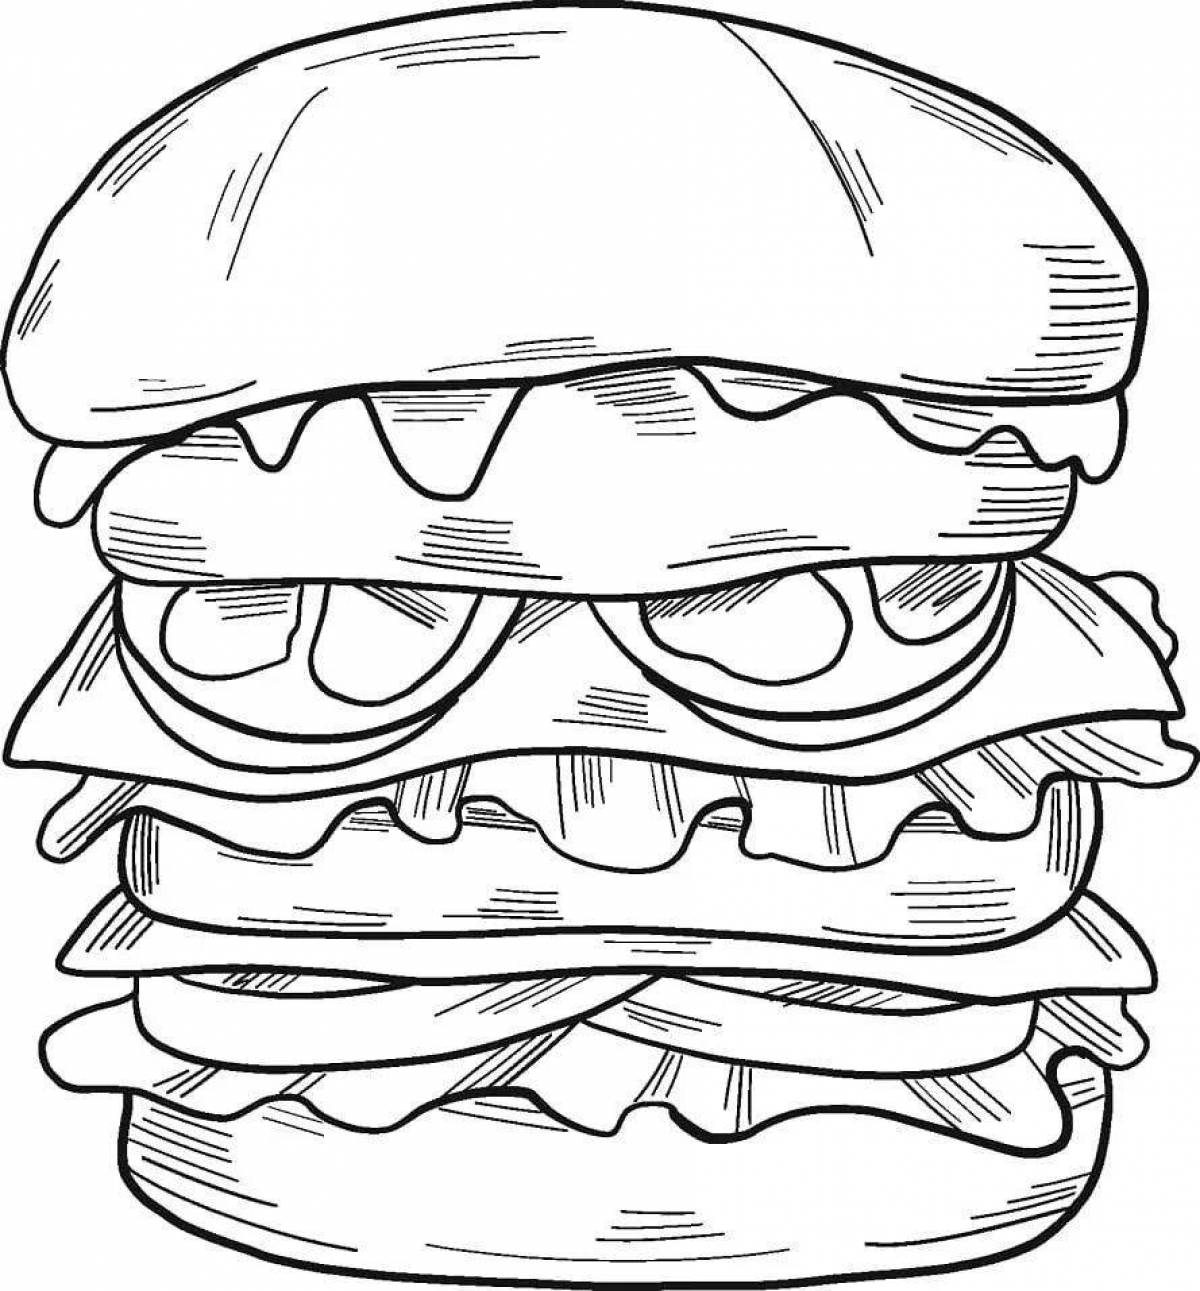 Fun burger coloring book for kids